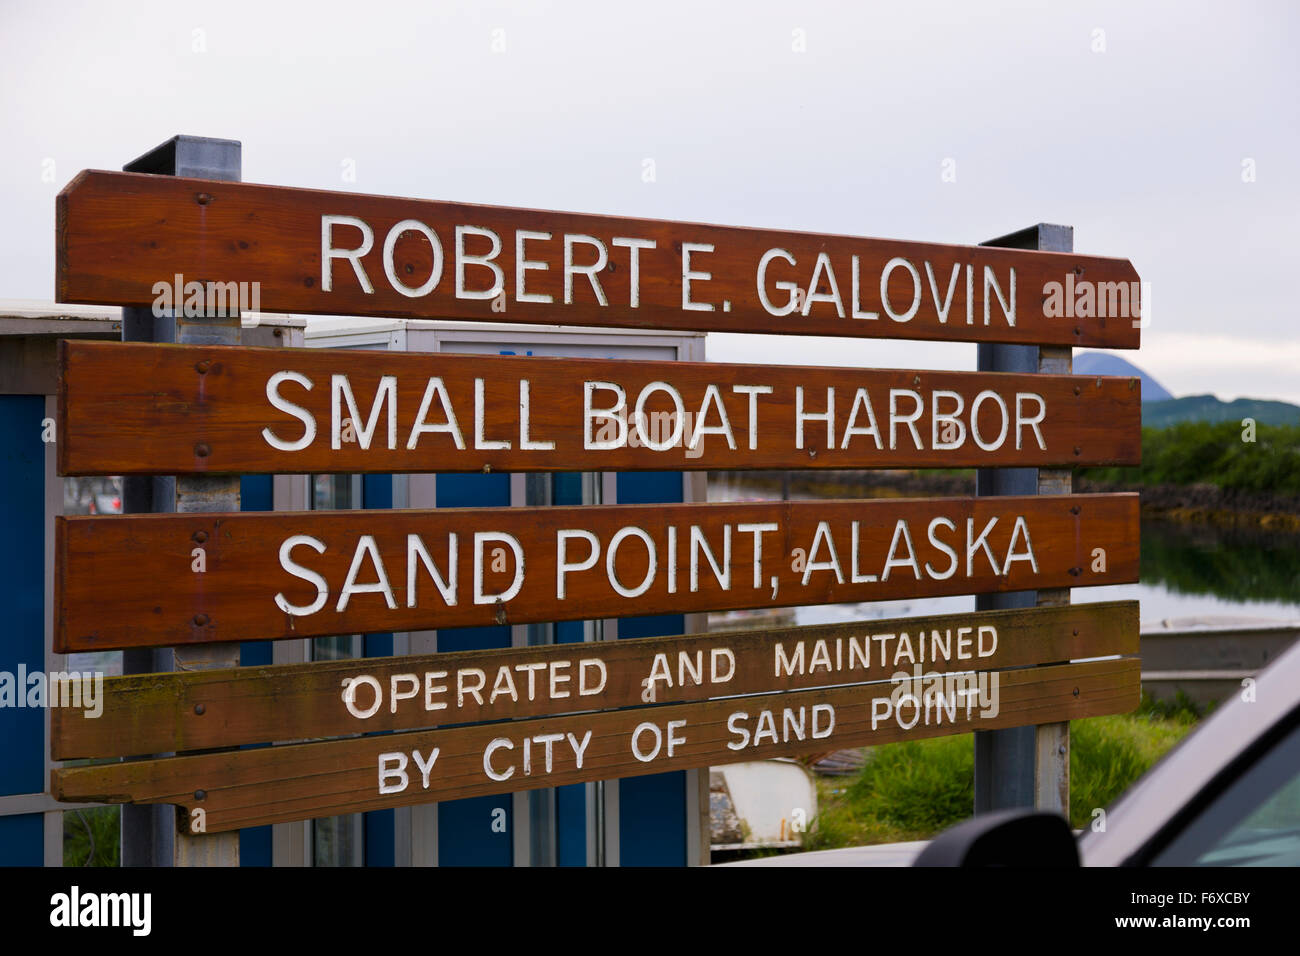 Betrieb und Wartung zu melden, für die Robert E. Galovin kleinen Bootshafen in Sand Point, Popof Island, südwestlichen Alaska, USA, Sommer Stockfoto